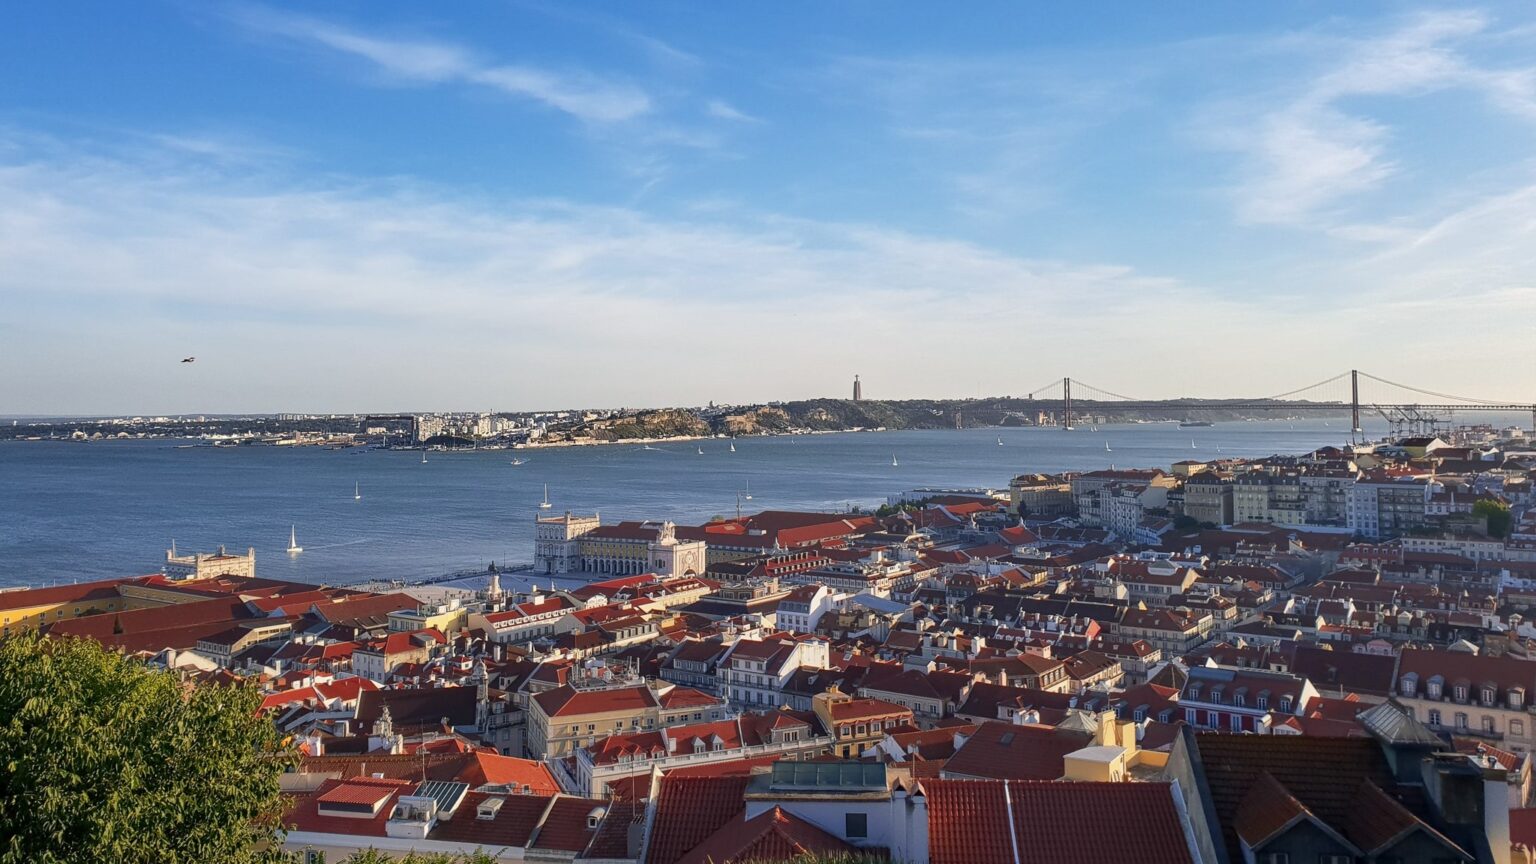 Lissabon Sehenswürdigkeiten